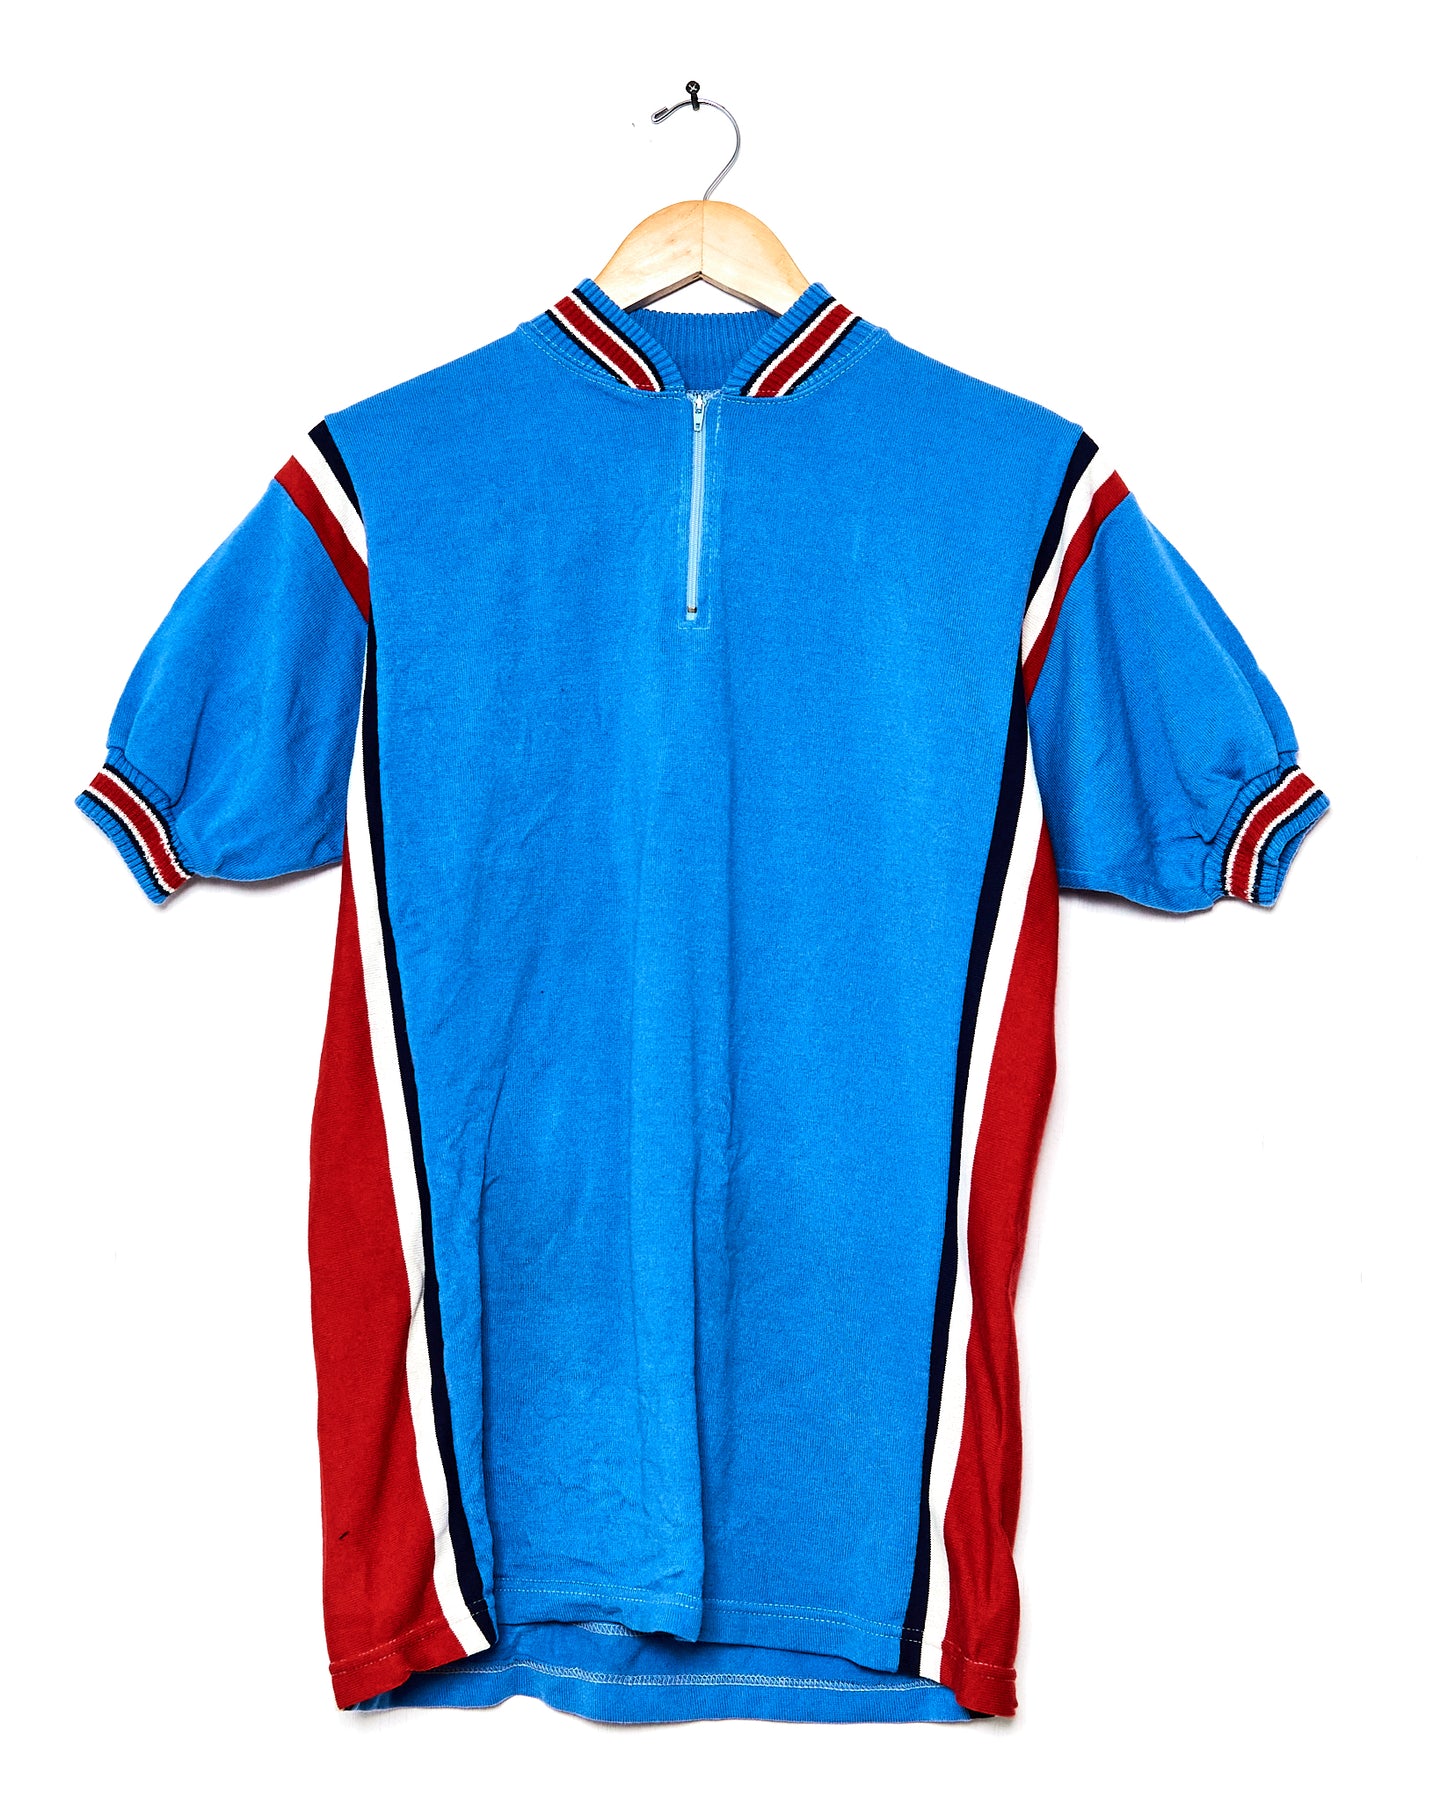 1970s Campitello Cycling Jersey